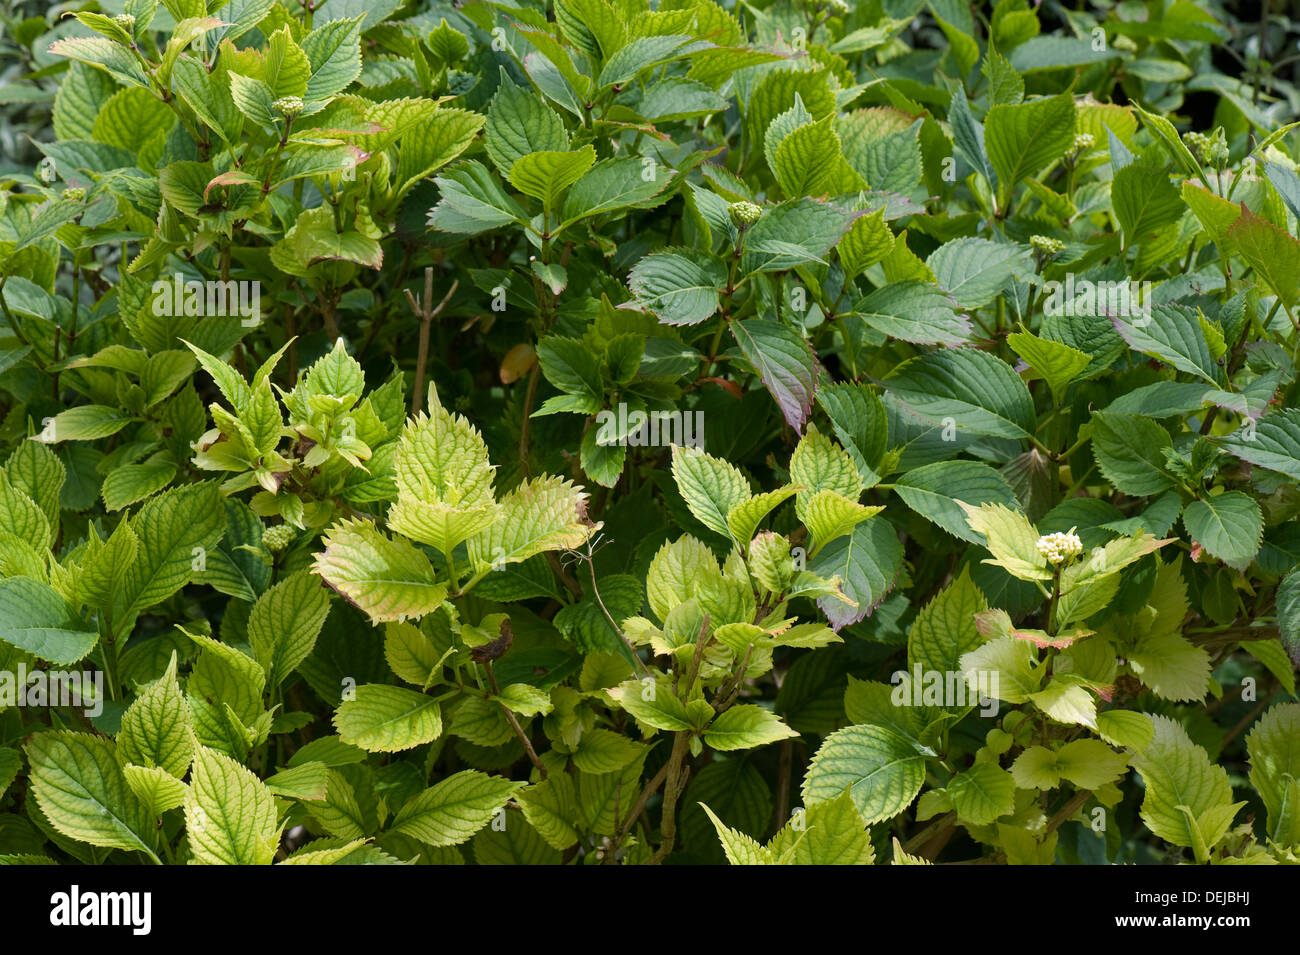 Kalk-induzierte Eisen und Stickstoff-Mangel verursacht Chlorosen der Blätter der Hydrangea Macrophylla Garten Strauch Stockfoto